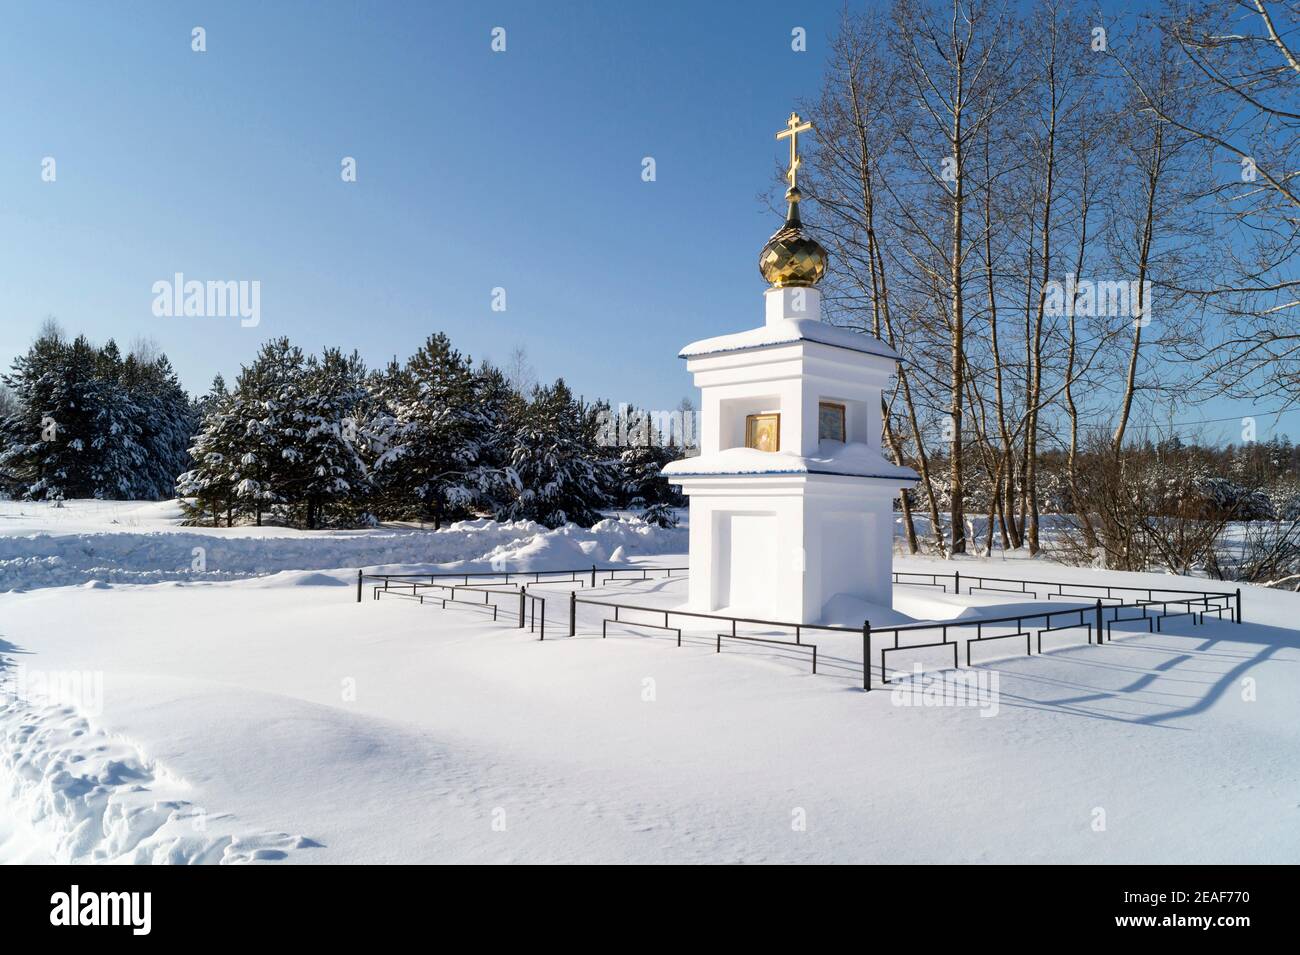 Blanching Kapelle mit Gold(en) Kuppel und Kreuz auf Hintergrund Holz. Landschaft mit Kiefer und Birke im Winter Länge der Zeit Stockfoto